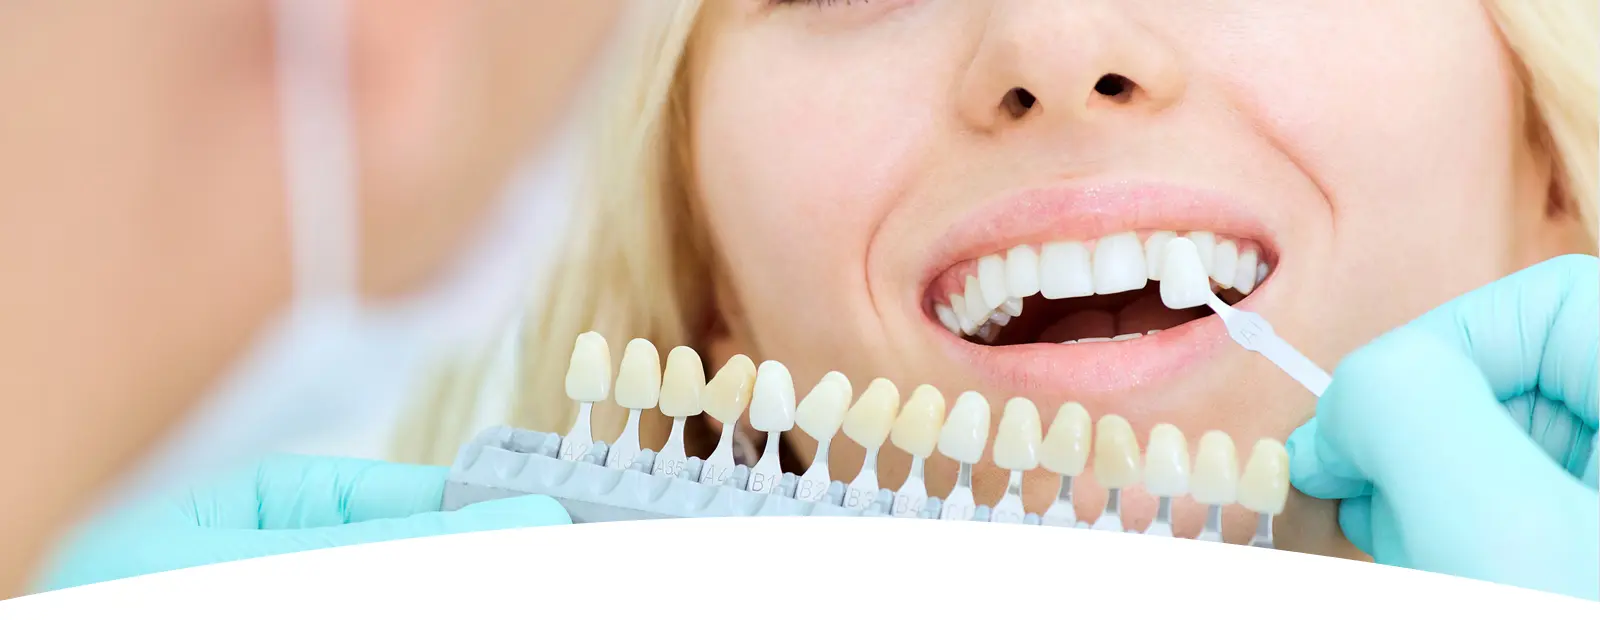 Mituri despre fatetele dentare